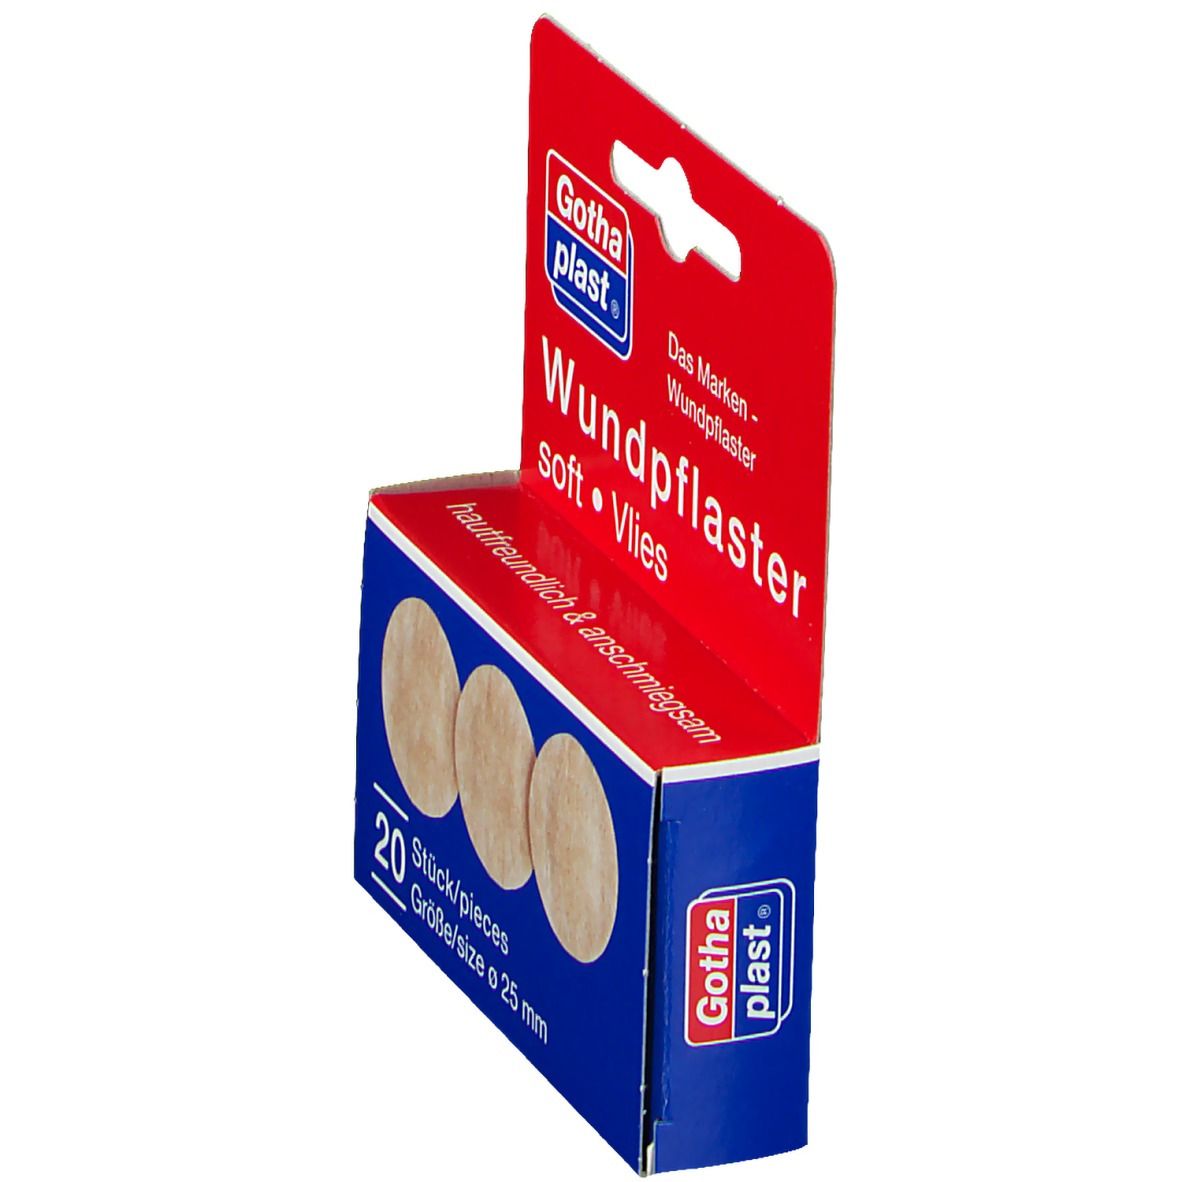 Gothaplast® Wundpflaster soft Vlies (hypoallergen) 2,5 cm Durchmesser